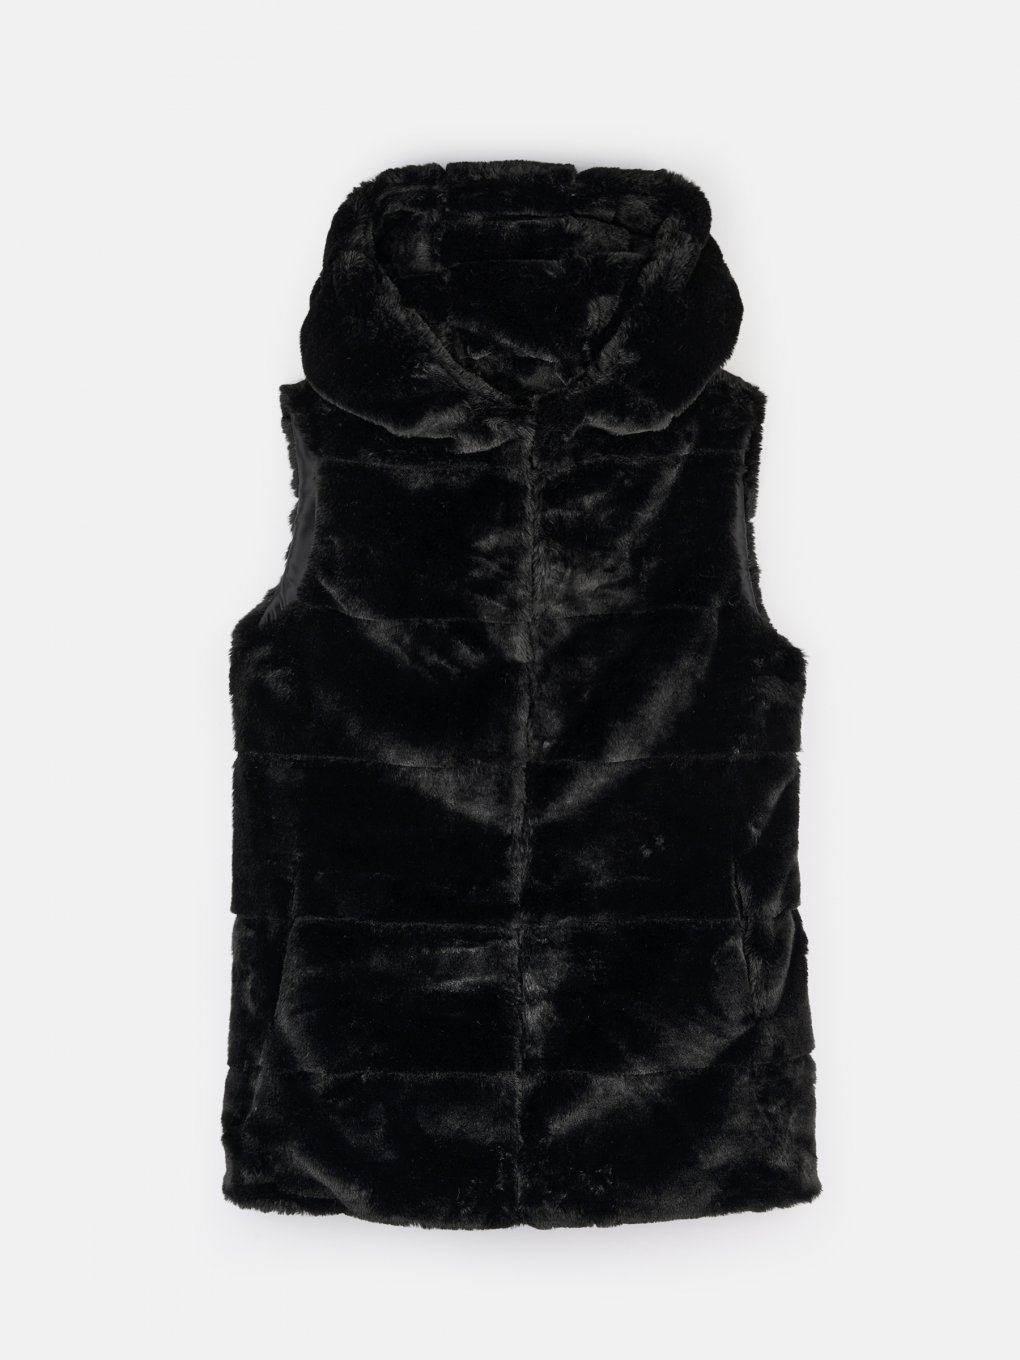 Faux fur vest with hood